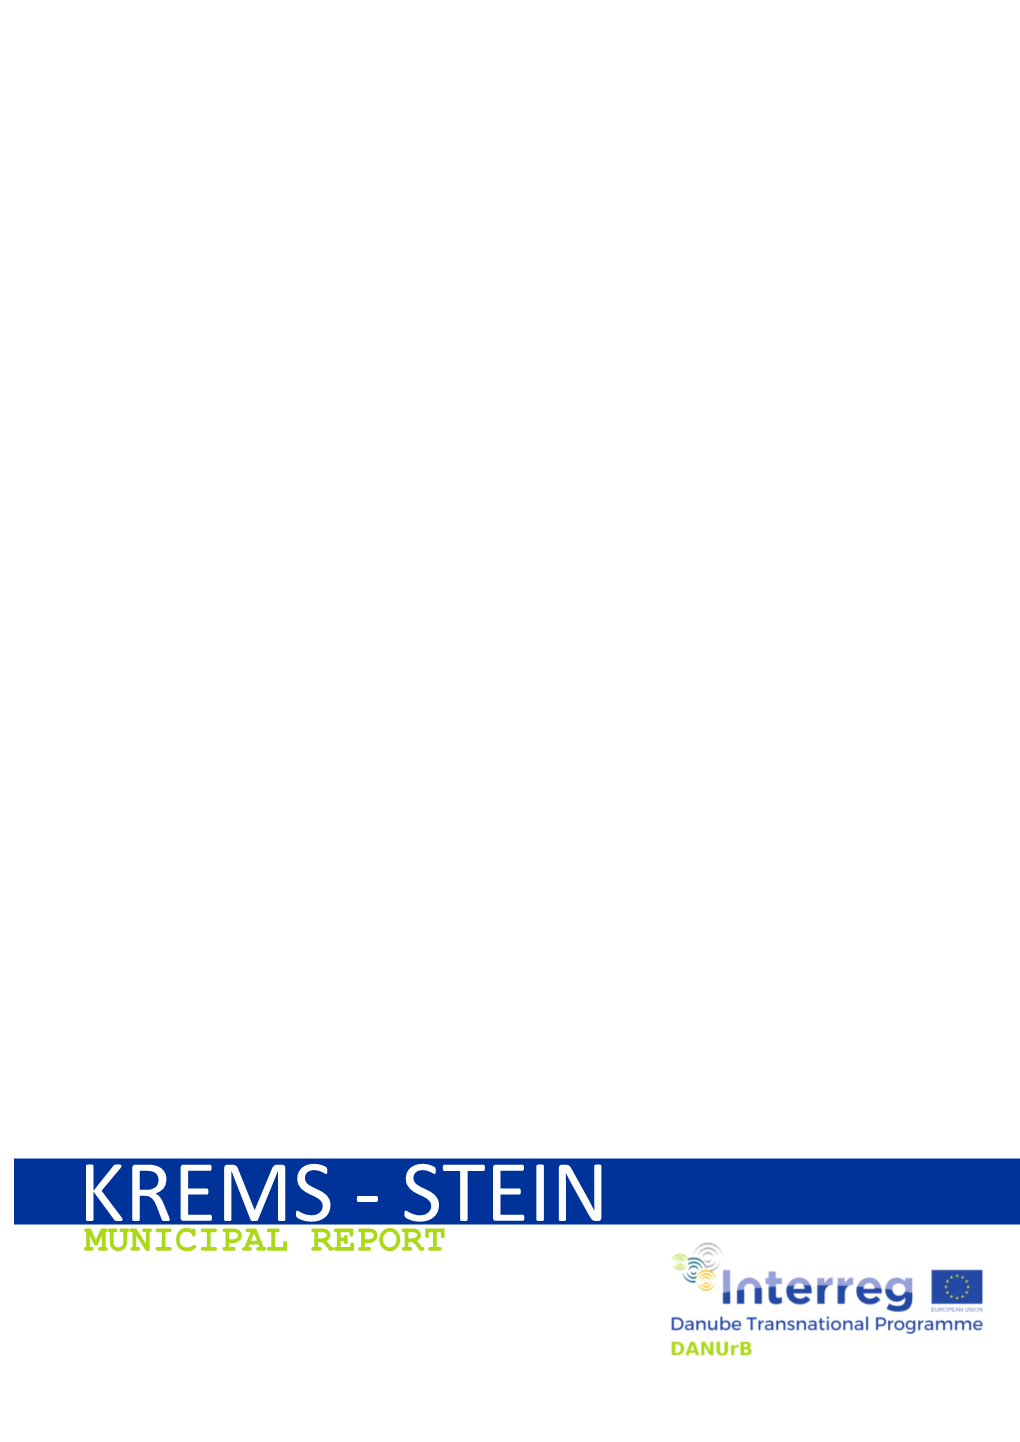 Krems - Stein Municipal Report Contents 1